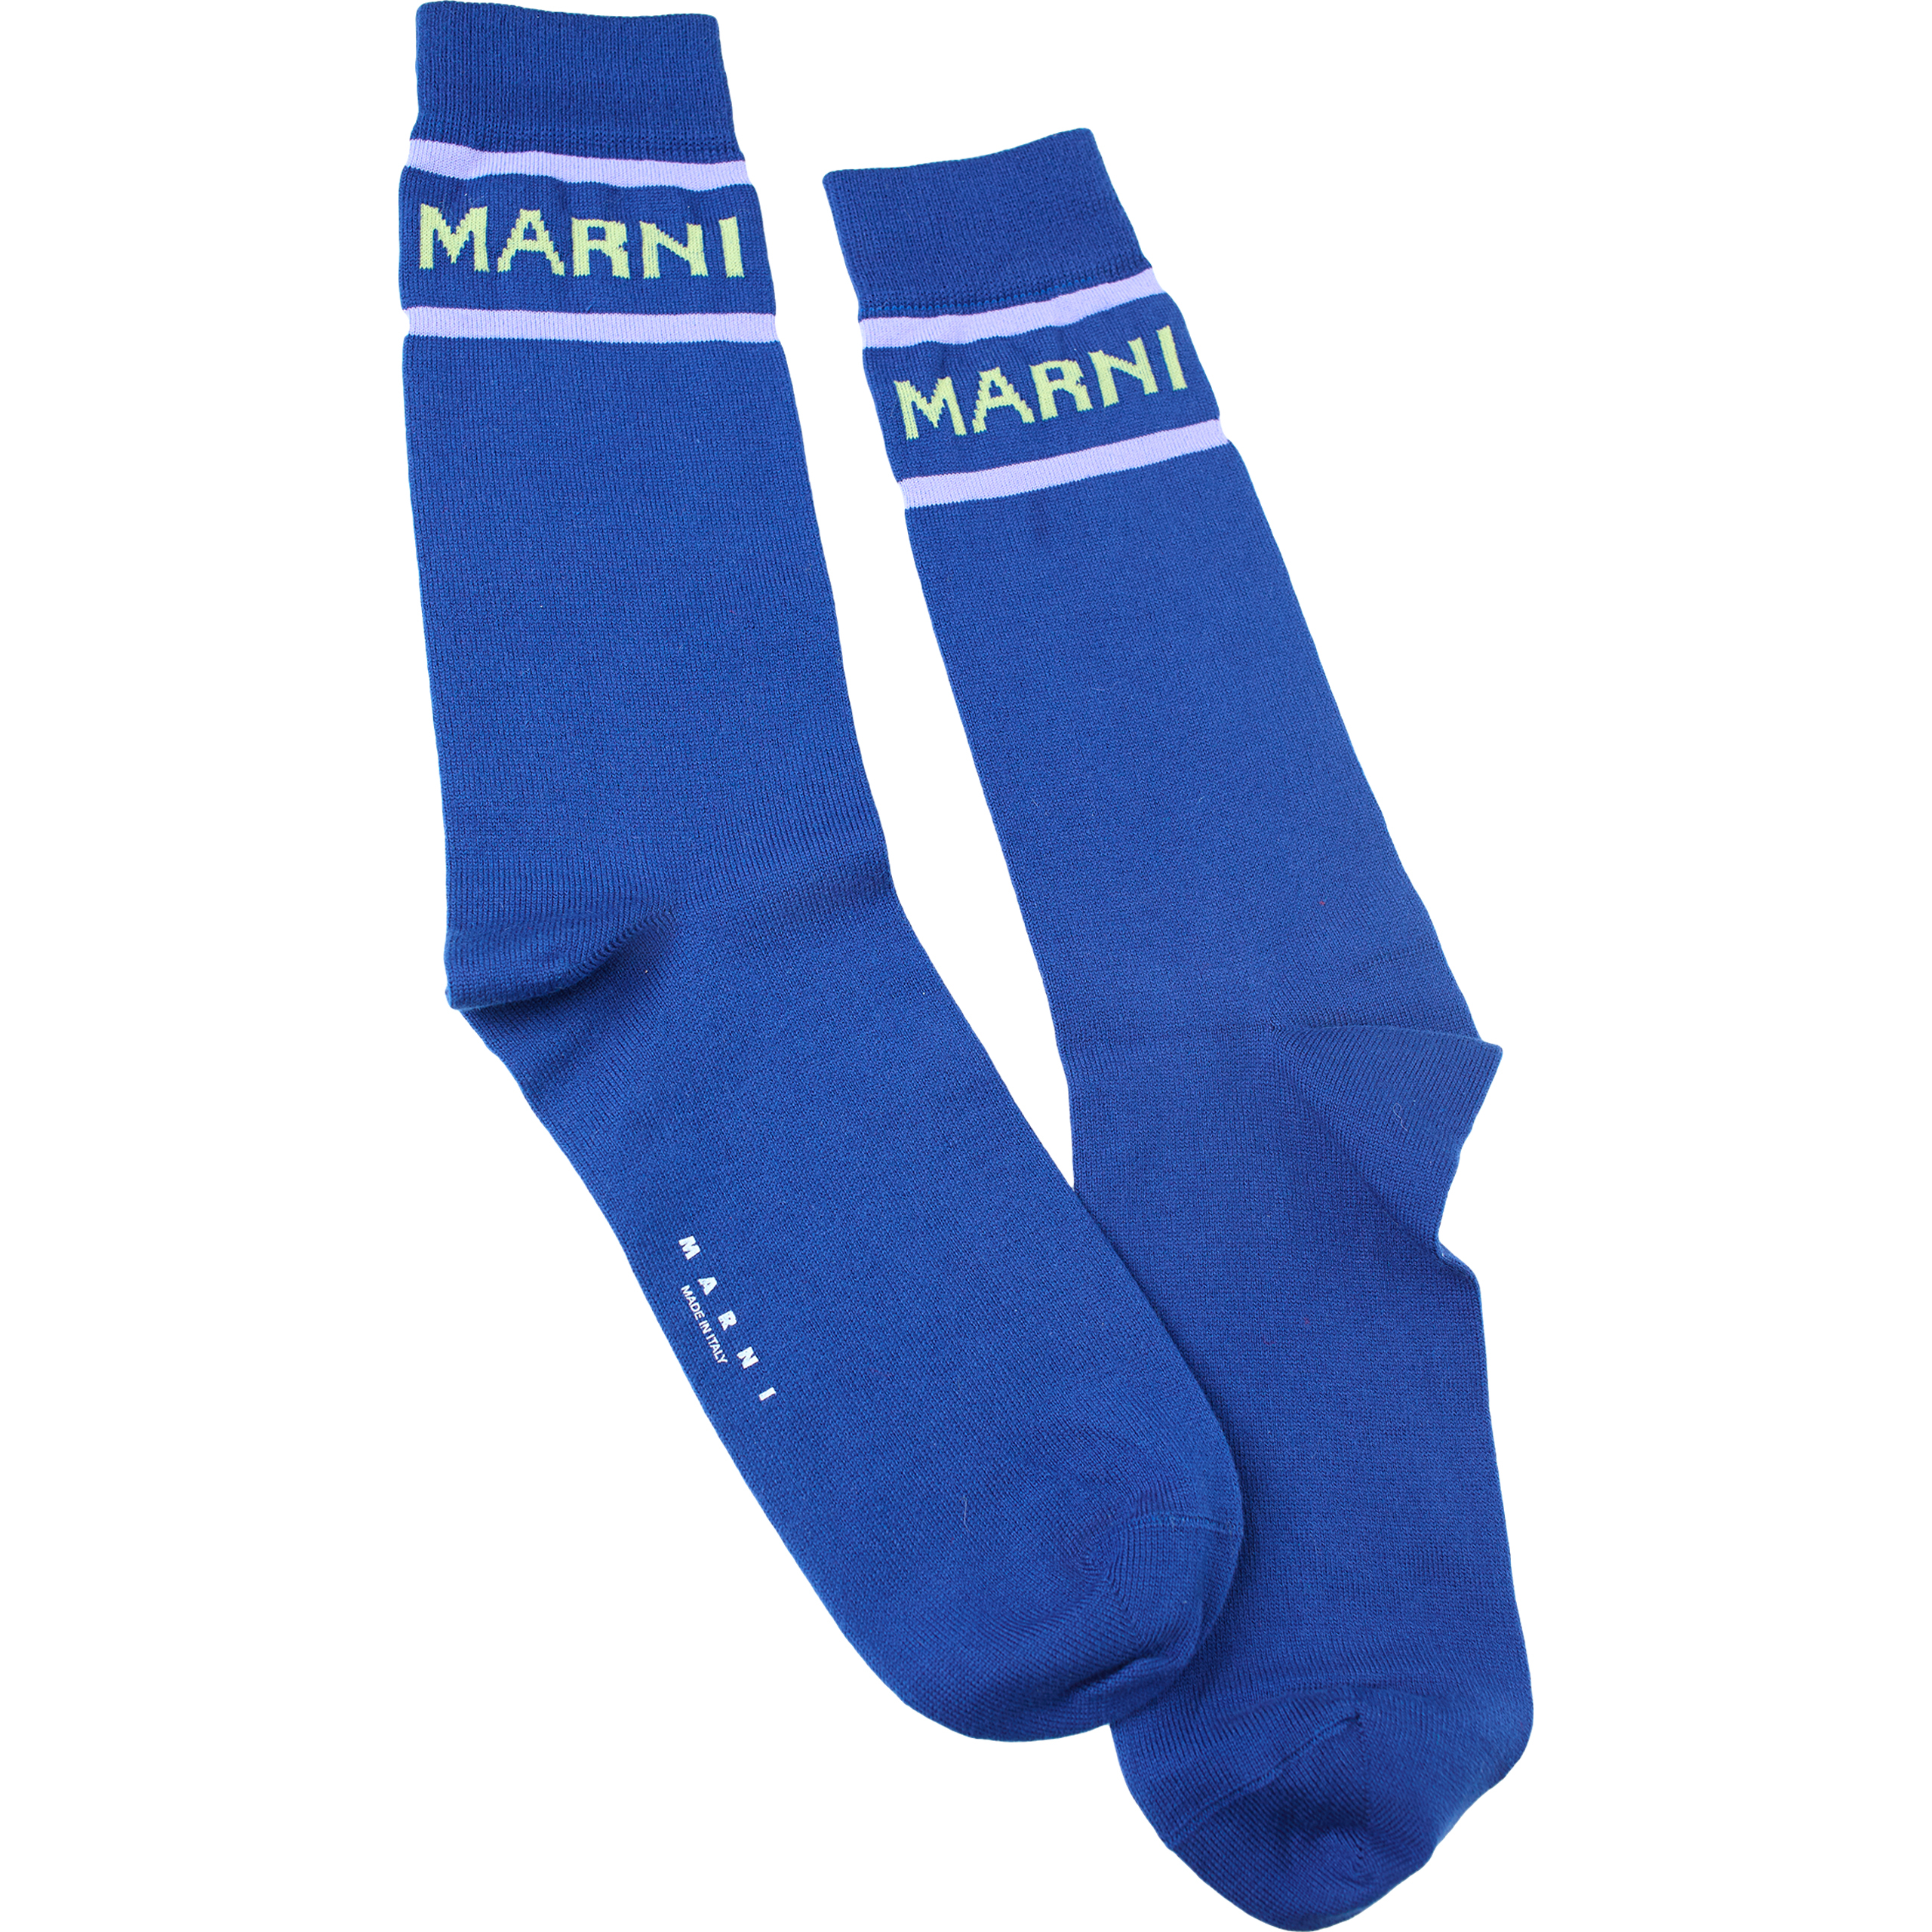 Синие носки с логотипом Marni SKZC0088Q0/UFC112/00B56, размер M